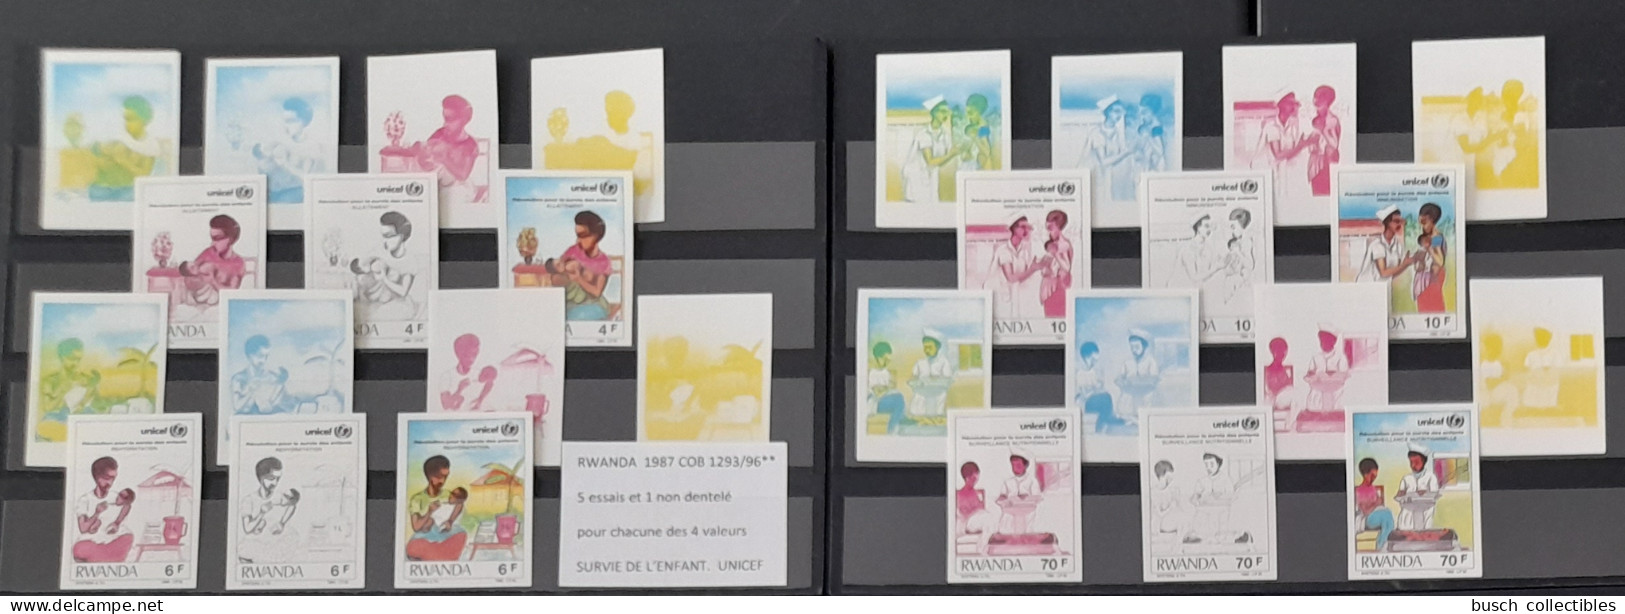 Rwanda 1987 COB 1293 - 1296 Color Proofs Essais Couleur IMPERF ND Révolution Pour Survie De L'Enfant UNICEF Child Kind - Nuovi